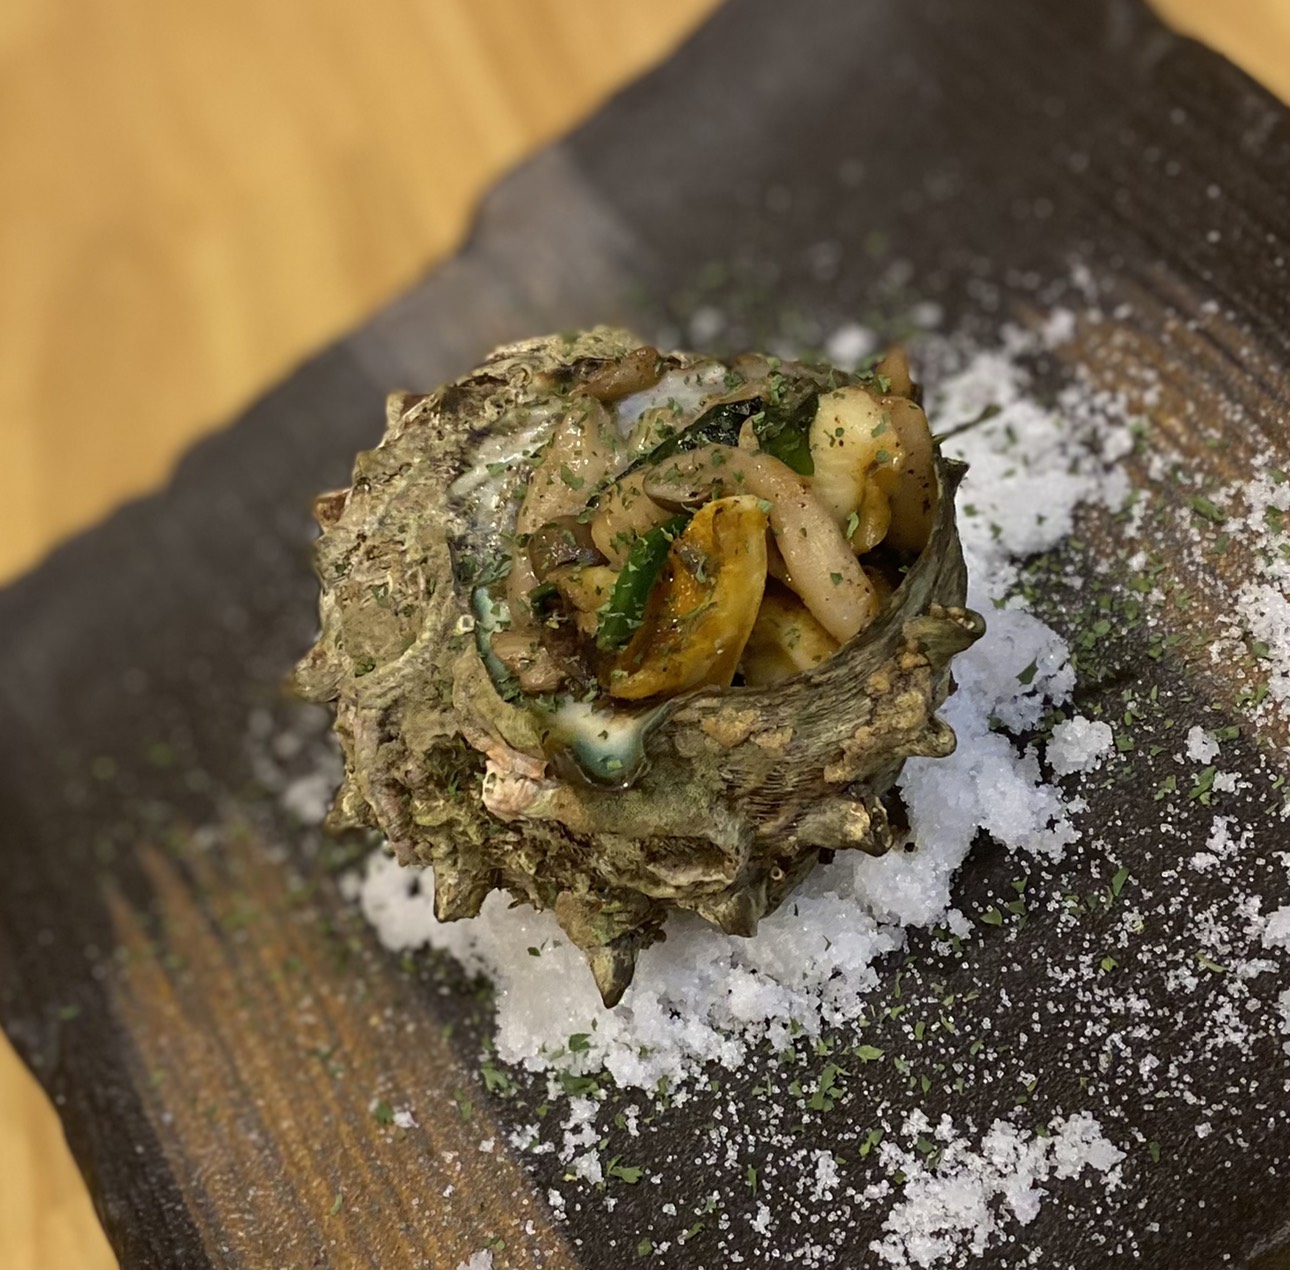 サザエのつぼ焼き ガーリックバター醤油風味 海の恵み 食の底力 Japan 公式レシピサイト